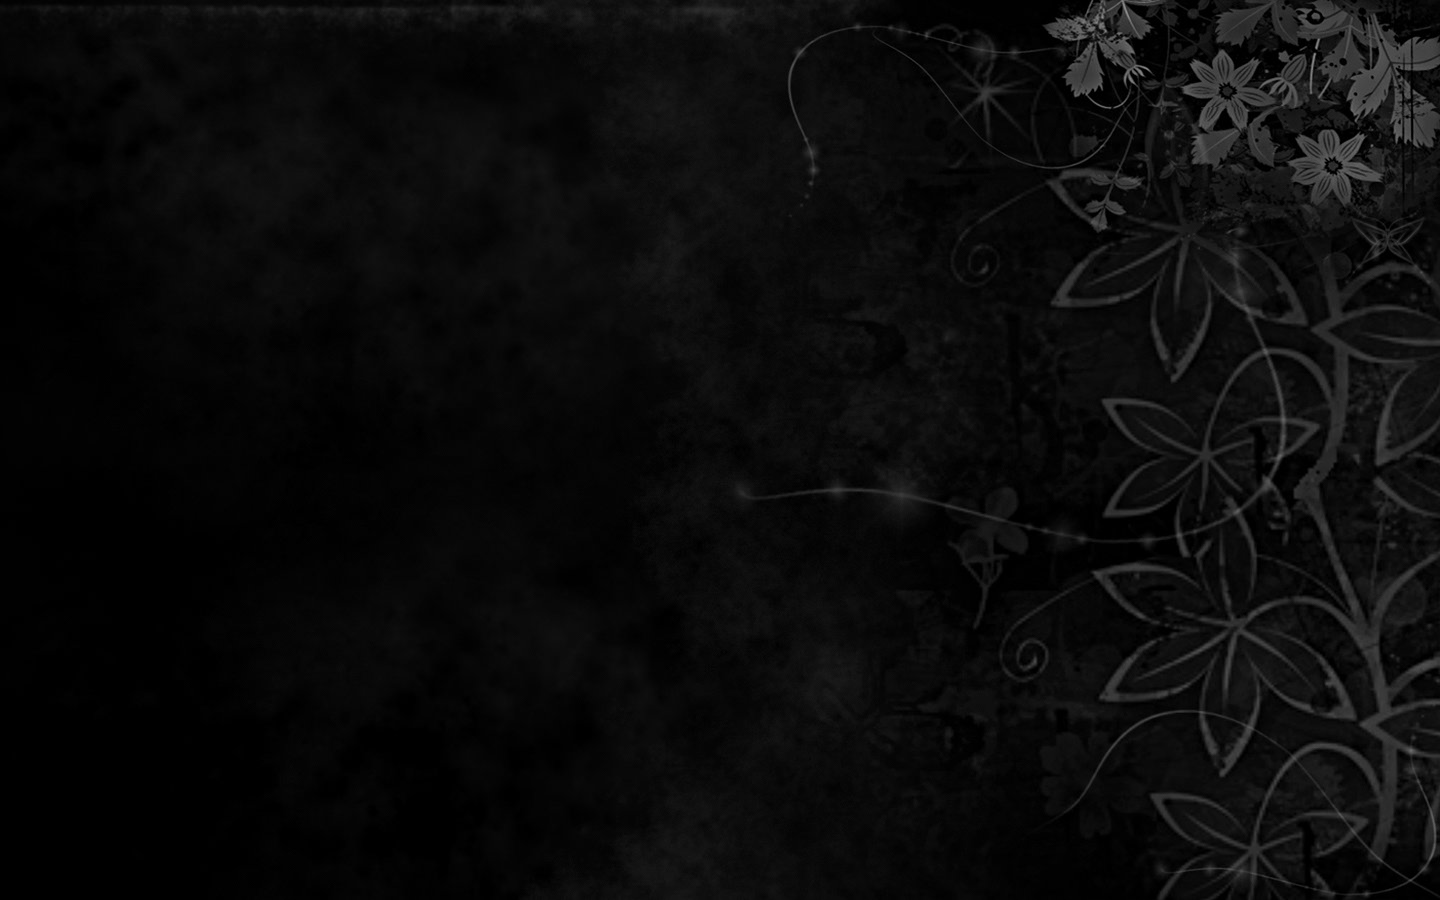 Black Wallpaper  Black Wallpaper 26900921  Fanpop fanclubs